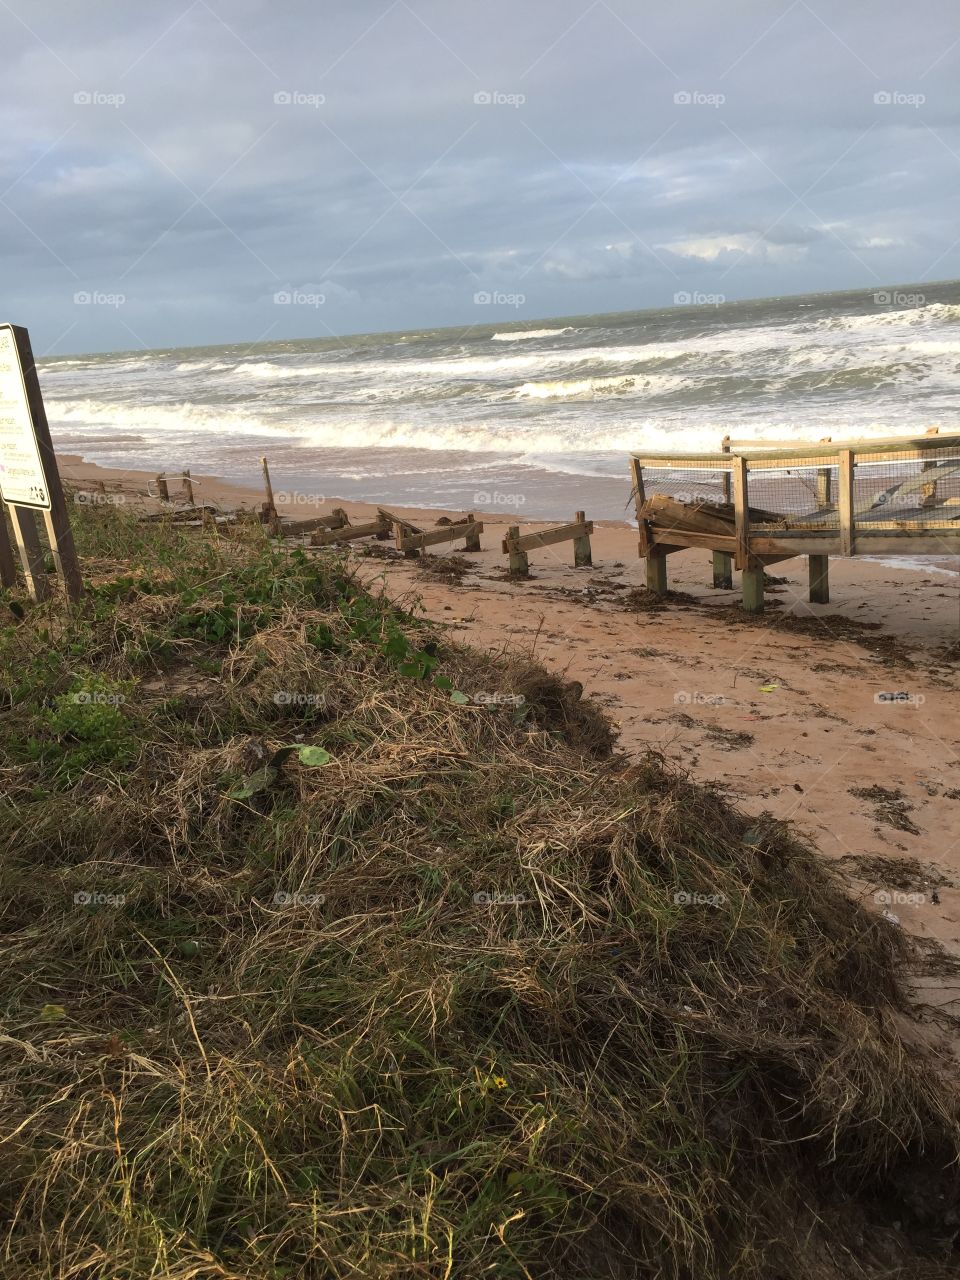 Ormond Beach boardwalk in pieces after Hurricane Matthew